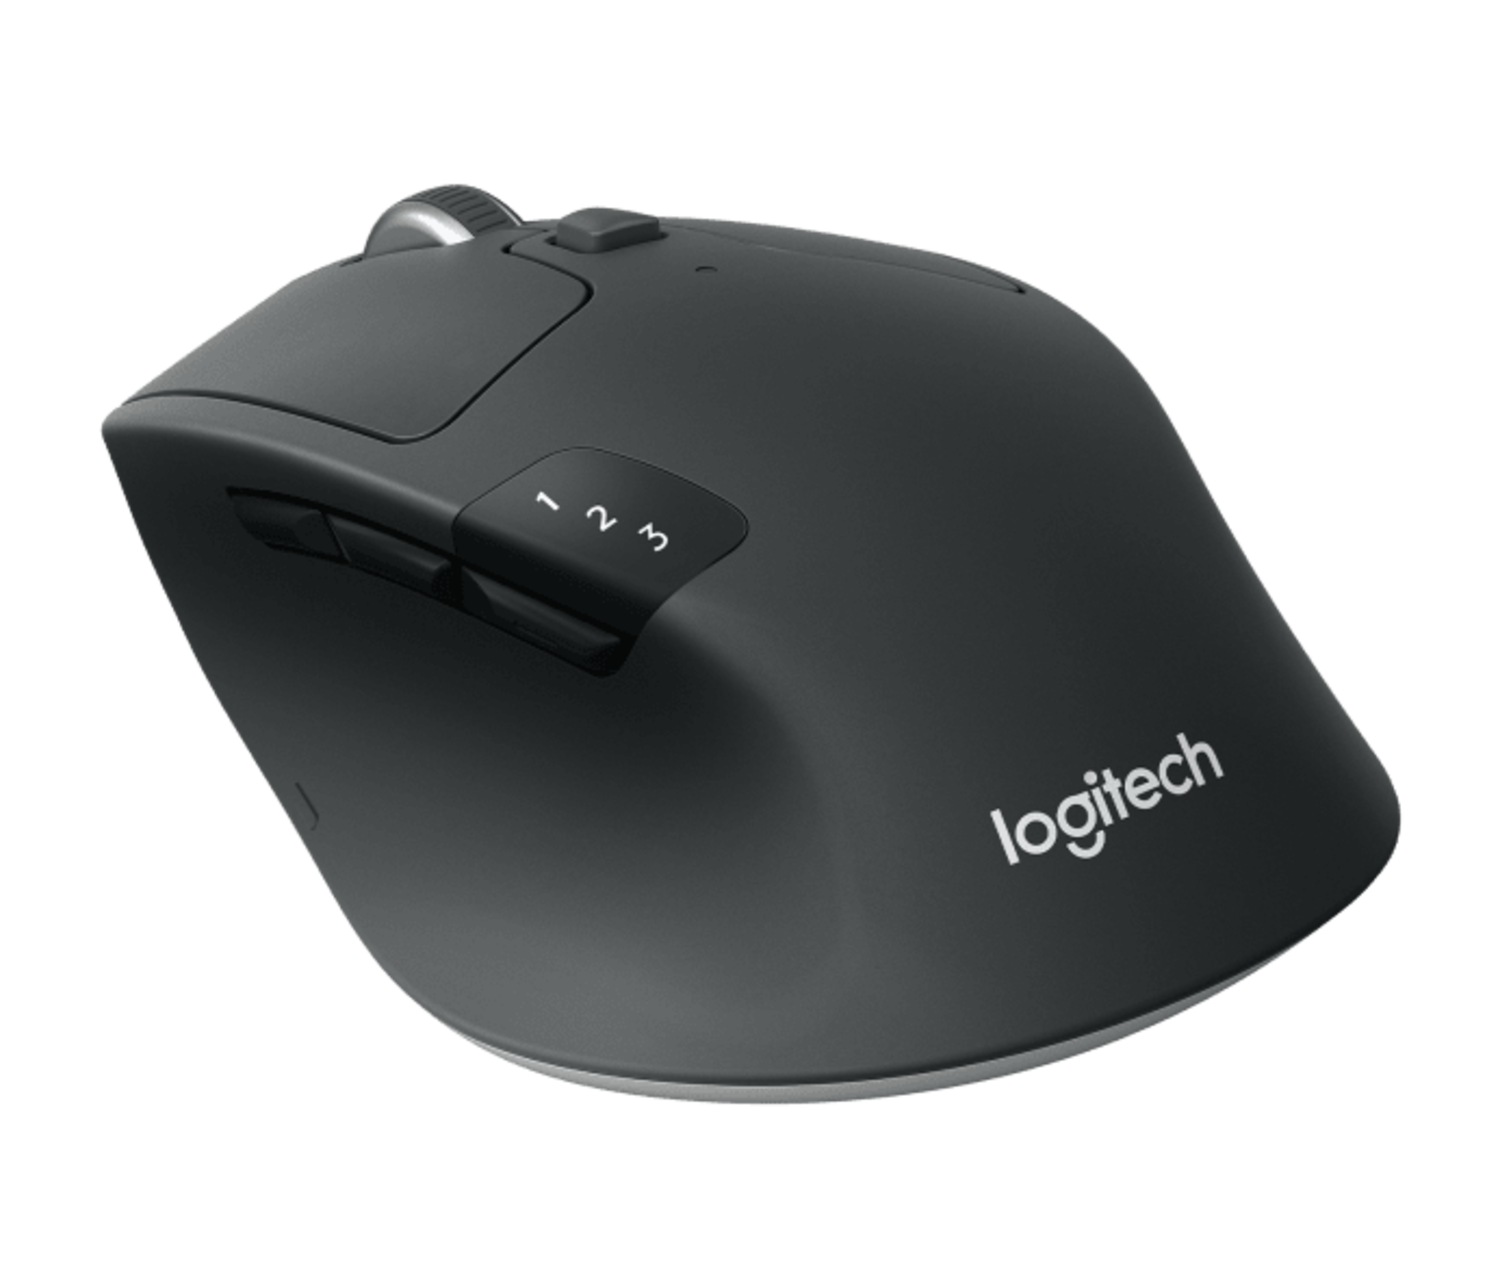 Logitech M720 Triathlon Mouse, 3D CAD Model Library